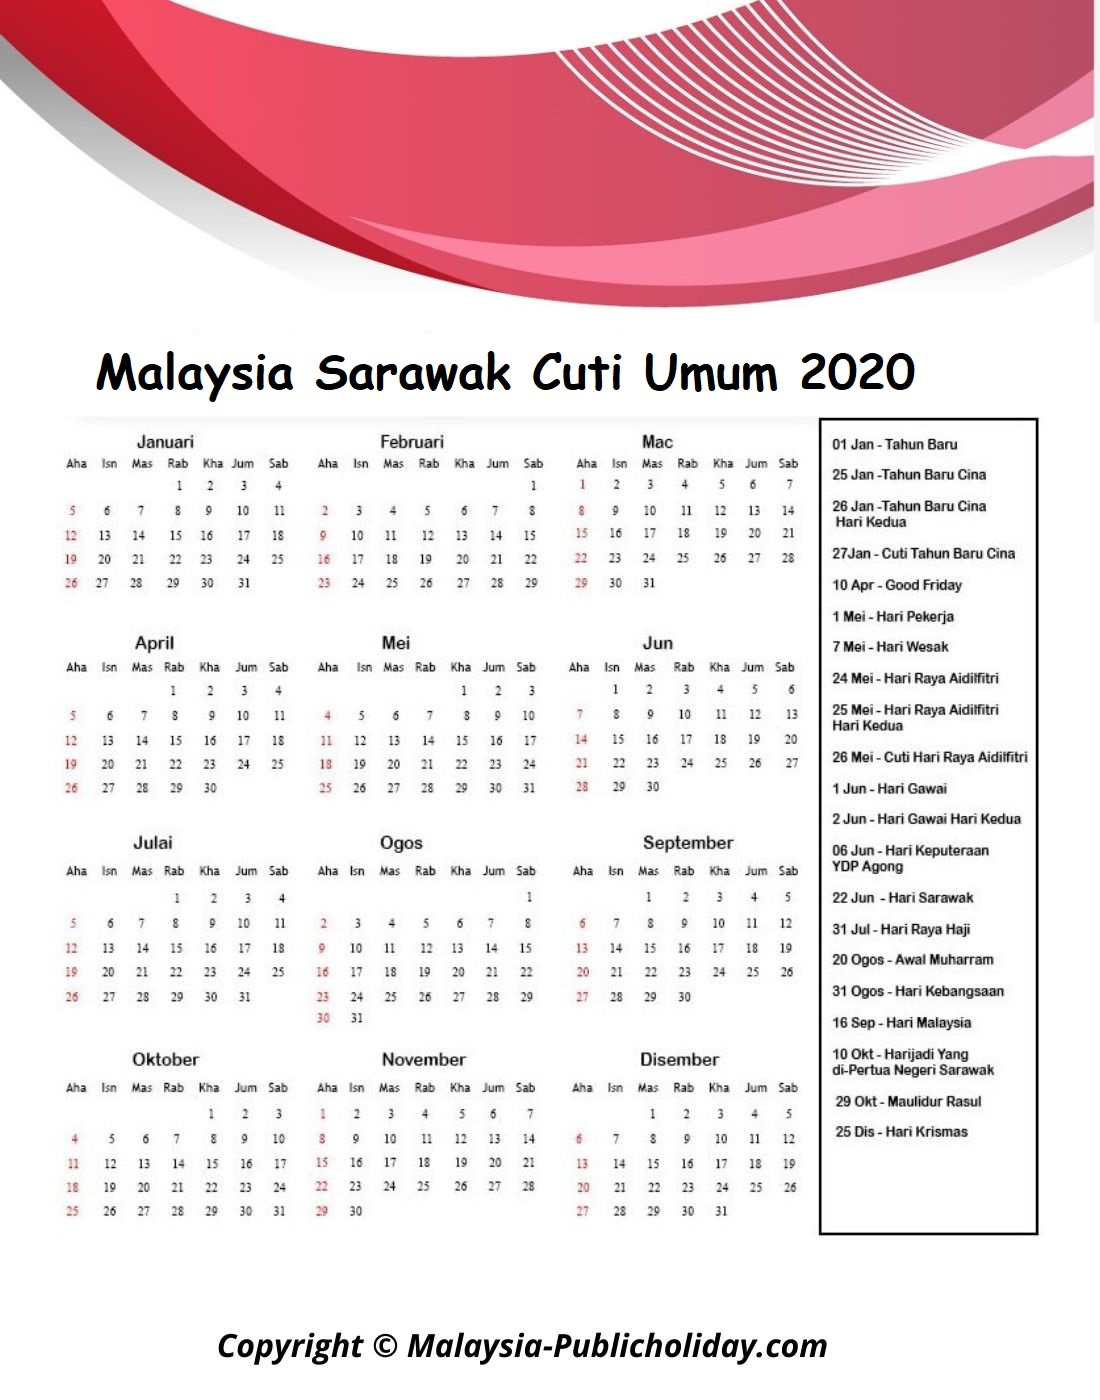 Kalendar Sarawak 2020 Malaysia